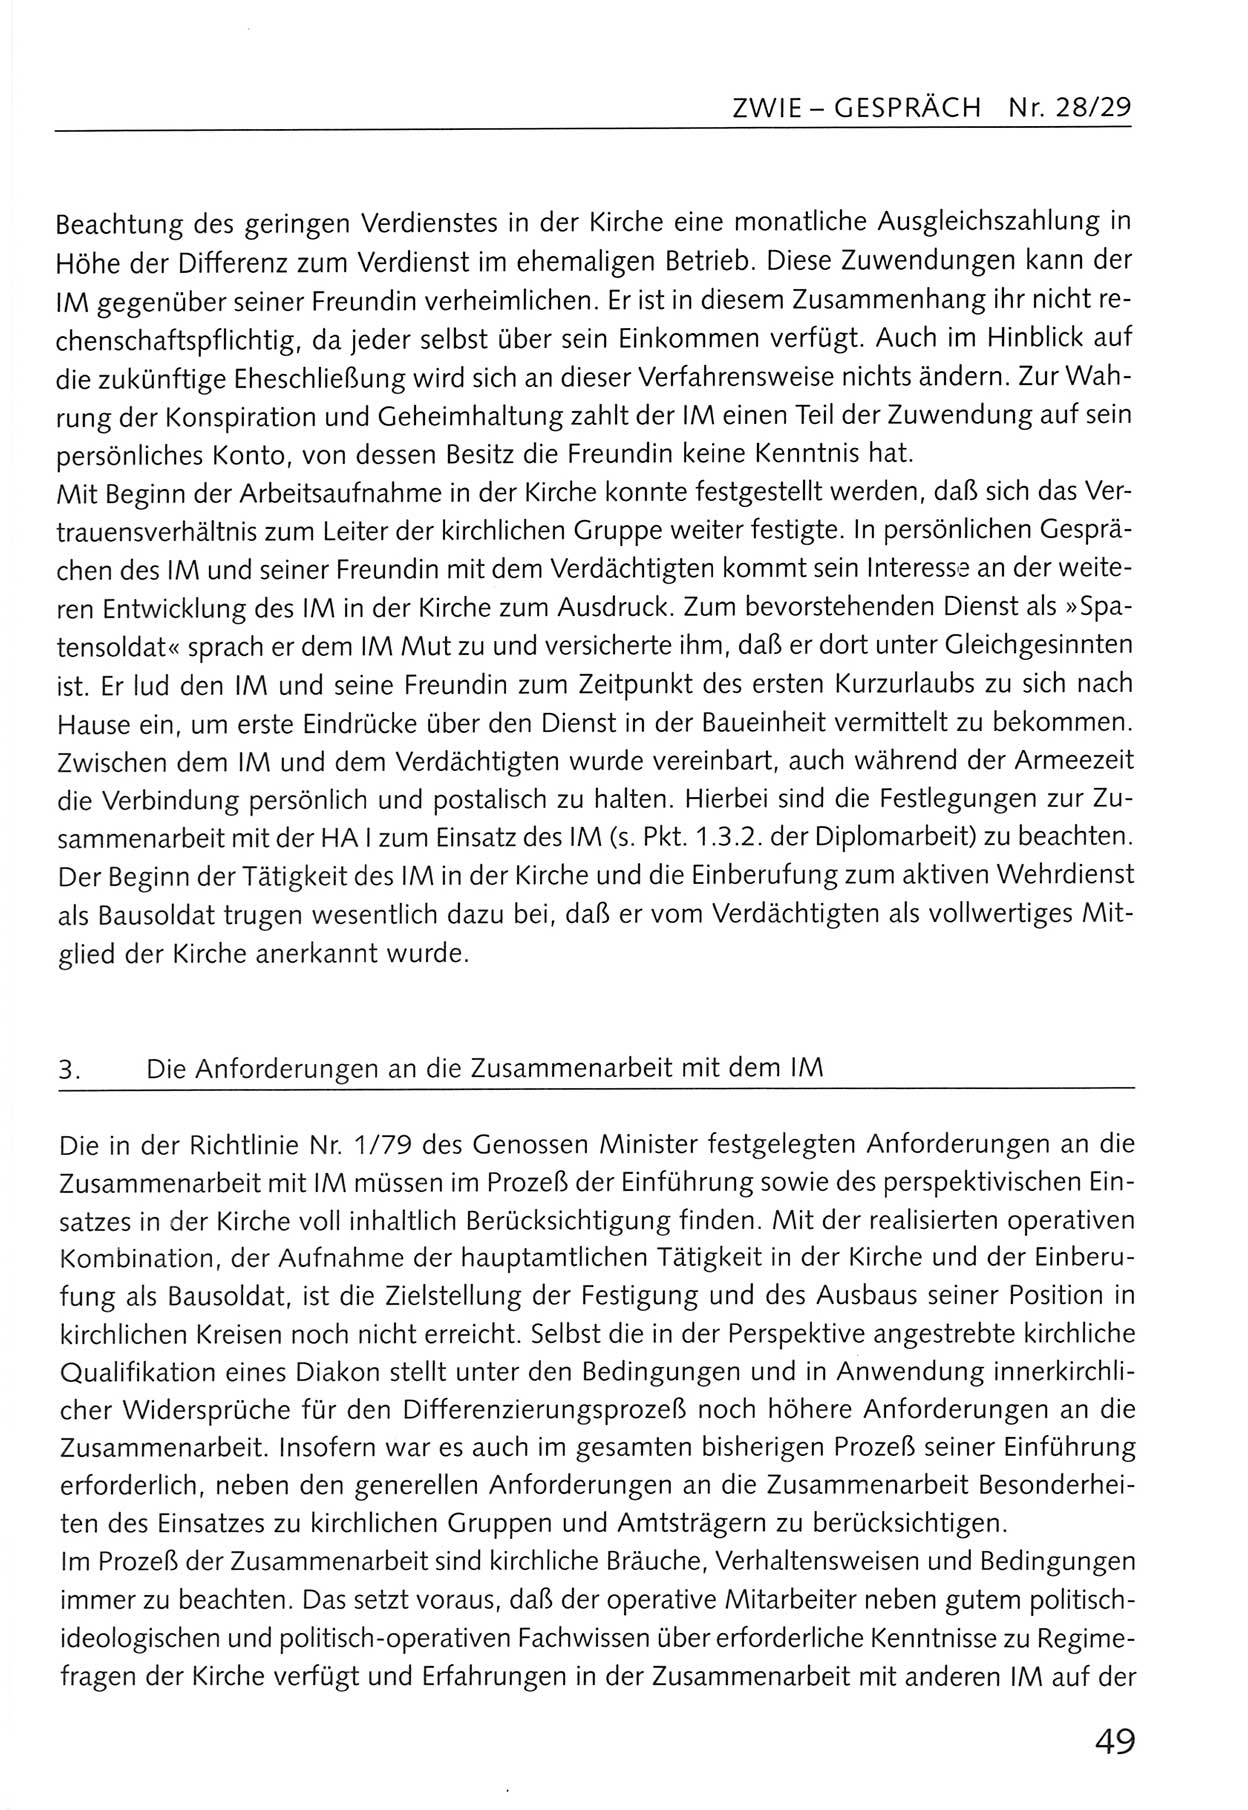 Zwie-Gespräch, Beiträge zum Umgang mit der Staatssicherheits-Vergangenheit [Deutsche Demokratische Republik (DDR)], Ausgabe Nr. 28/29, Berlin 1995, Seite 49 (Zwie-Gespr. Ausg. 28/29 1995, S. 49)